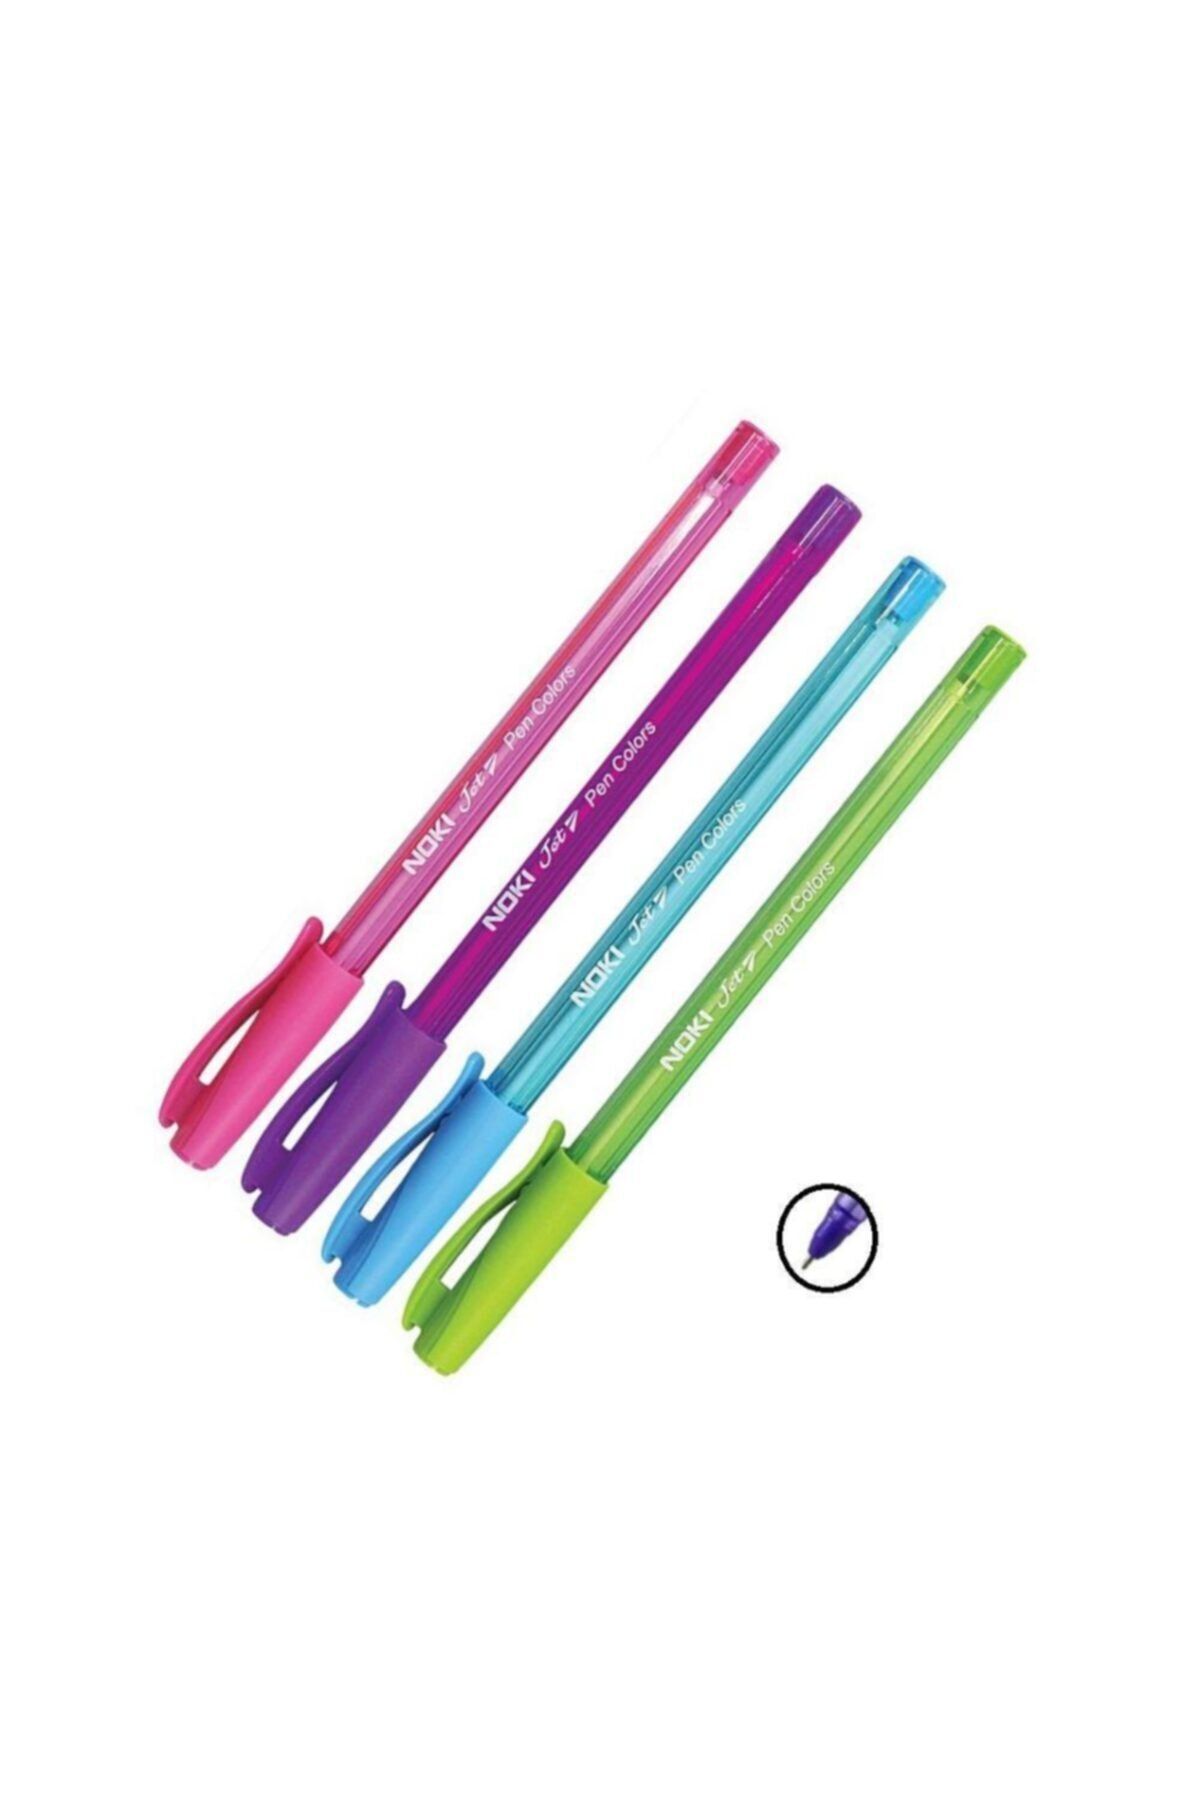 Noki Renkli Tükenmez Jet Ball Pen 1.0 mm 4 Adet  Pembe Açık Mavi Açık Yeşil Mor